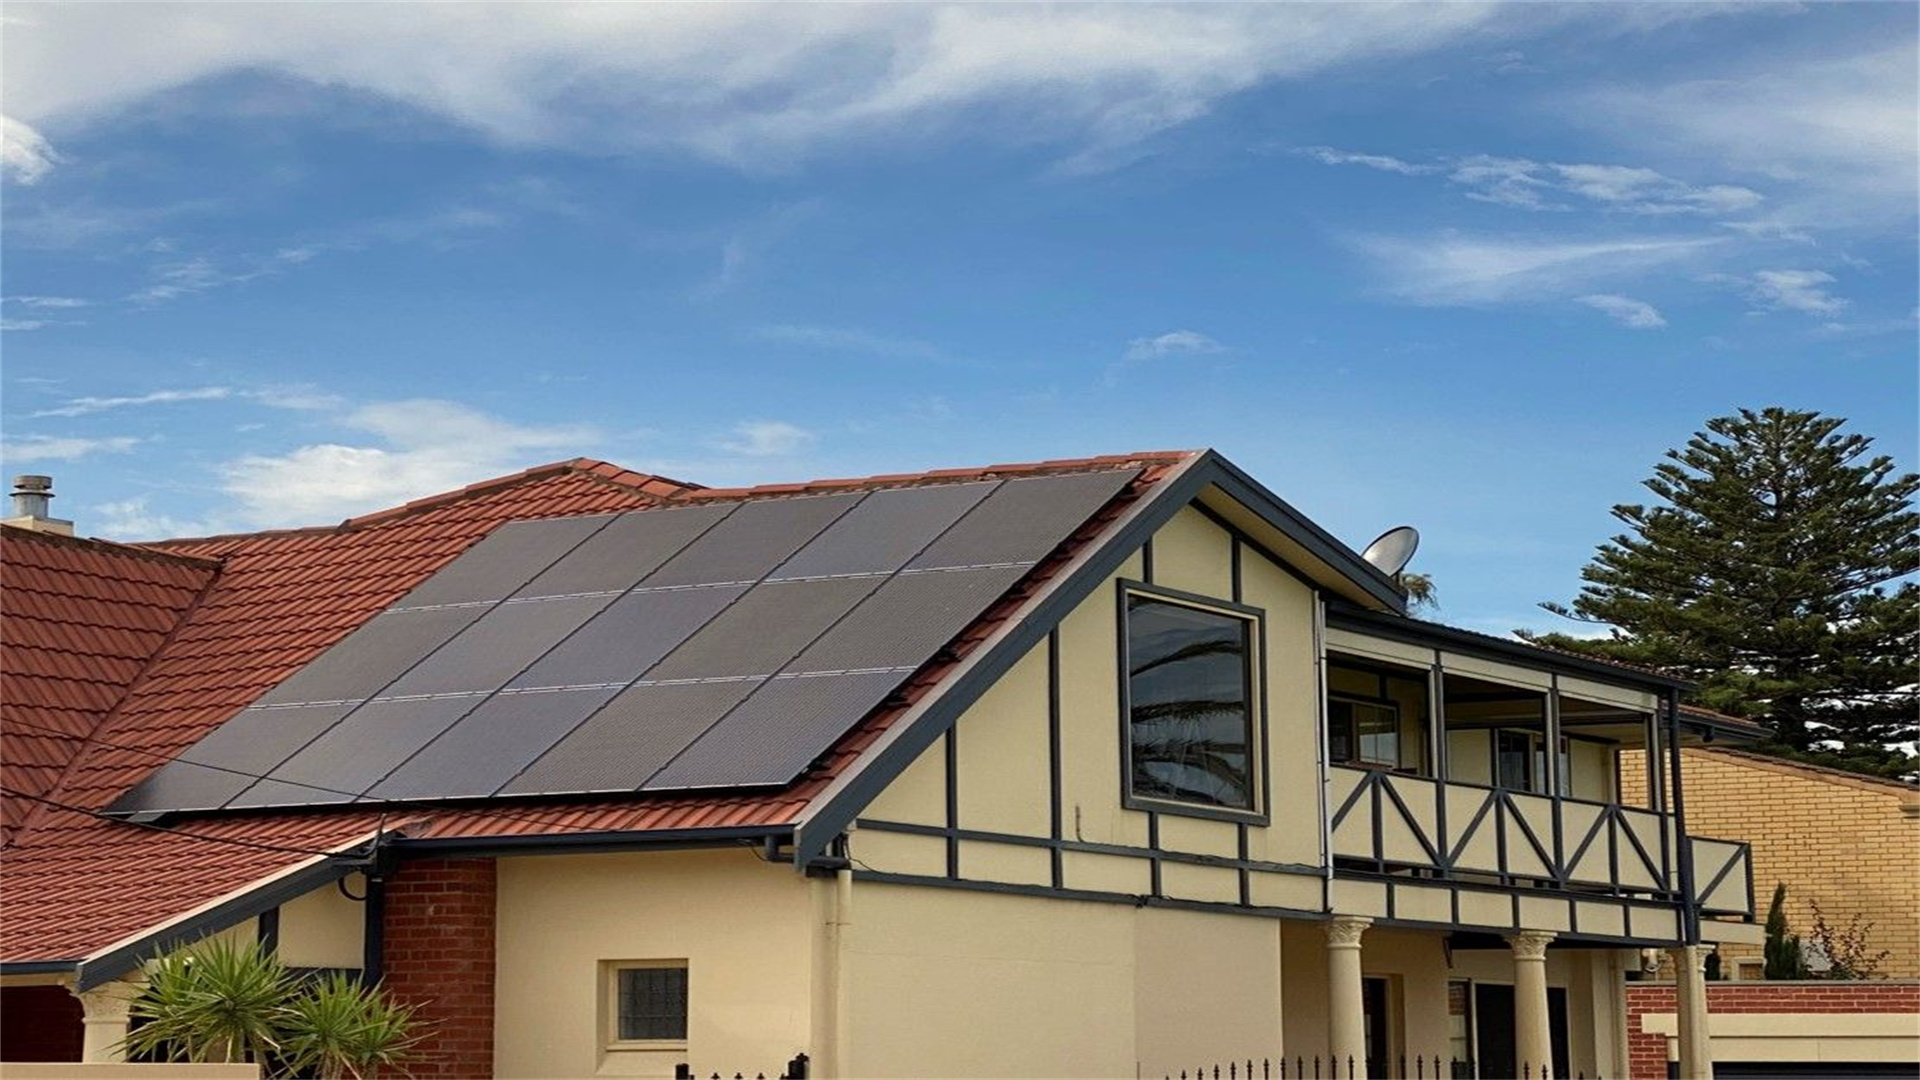 Adelaide, Australië - 9,9 kW gedistribueerd stroomopwekkingsproject voor huishoudens op daken